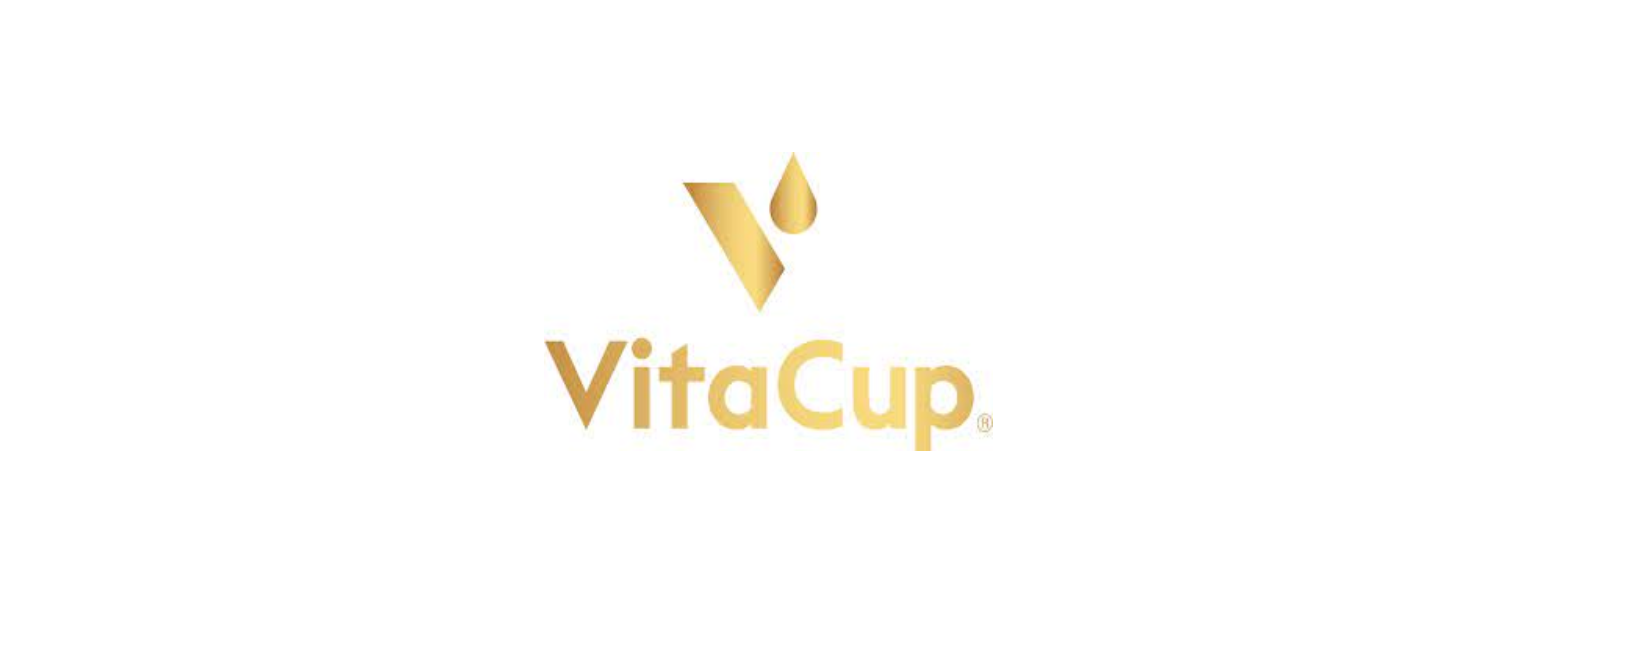 VitaCup Discount Code 2022